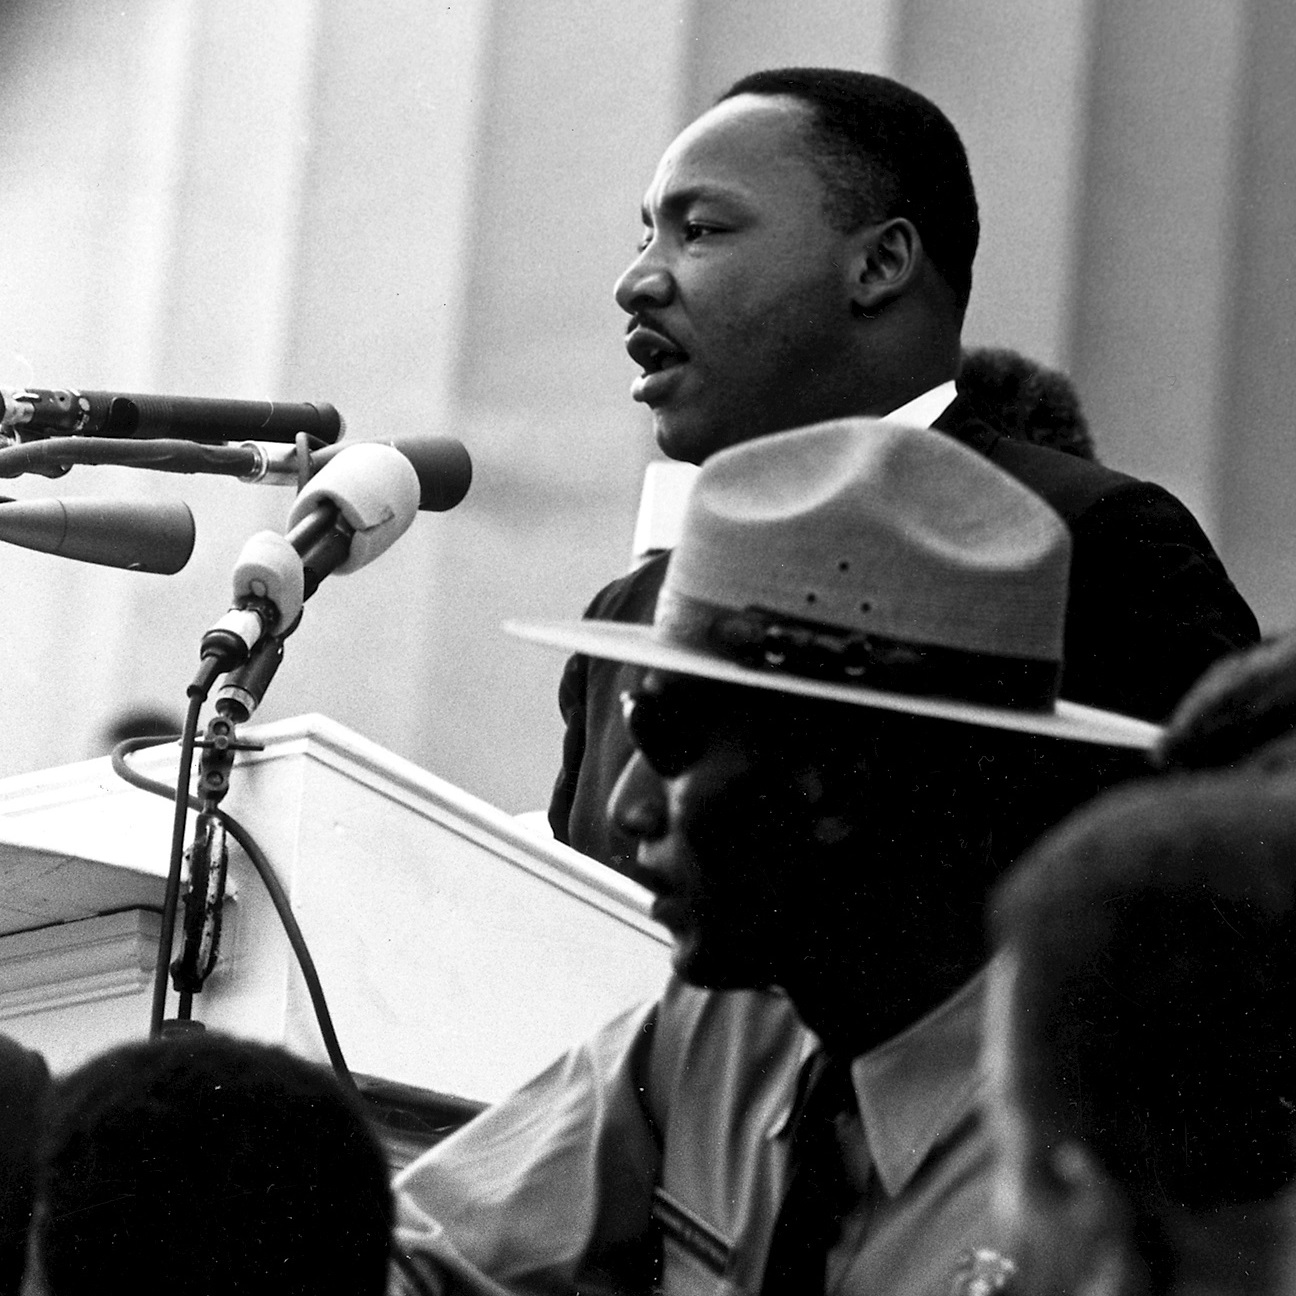 Przemówienie Martina Luthera Kinga wygłoszone w trakcie marszu uznaje się za jedno z najlepszych przemówień w historii.